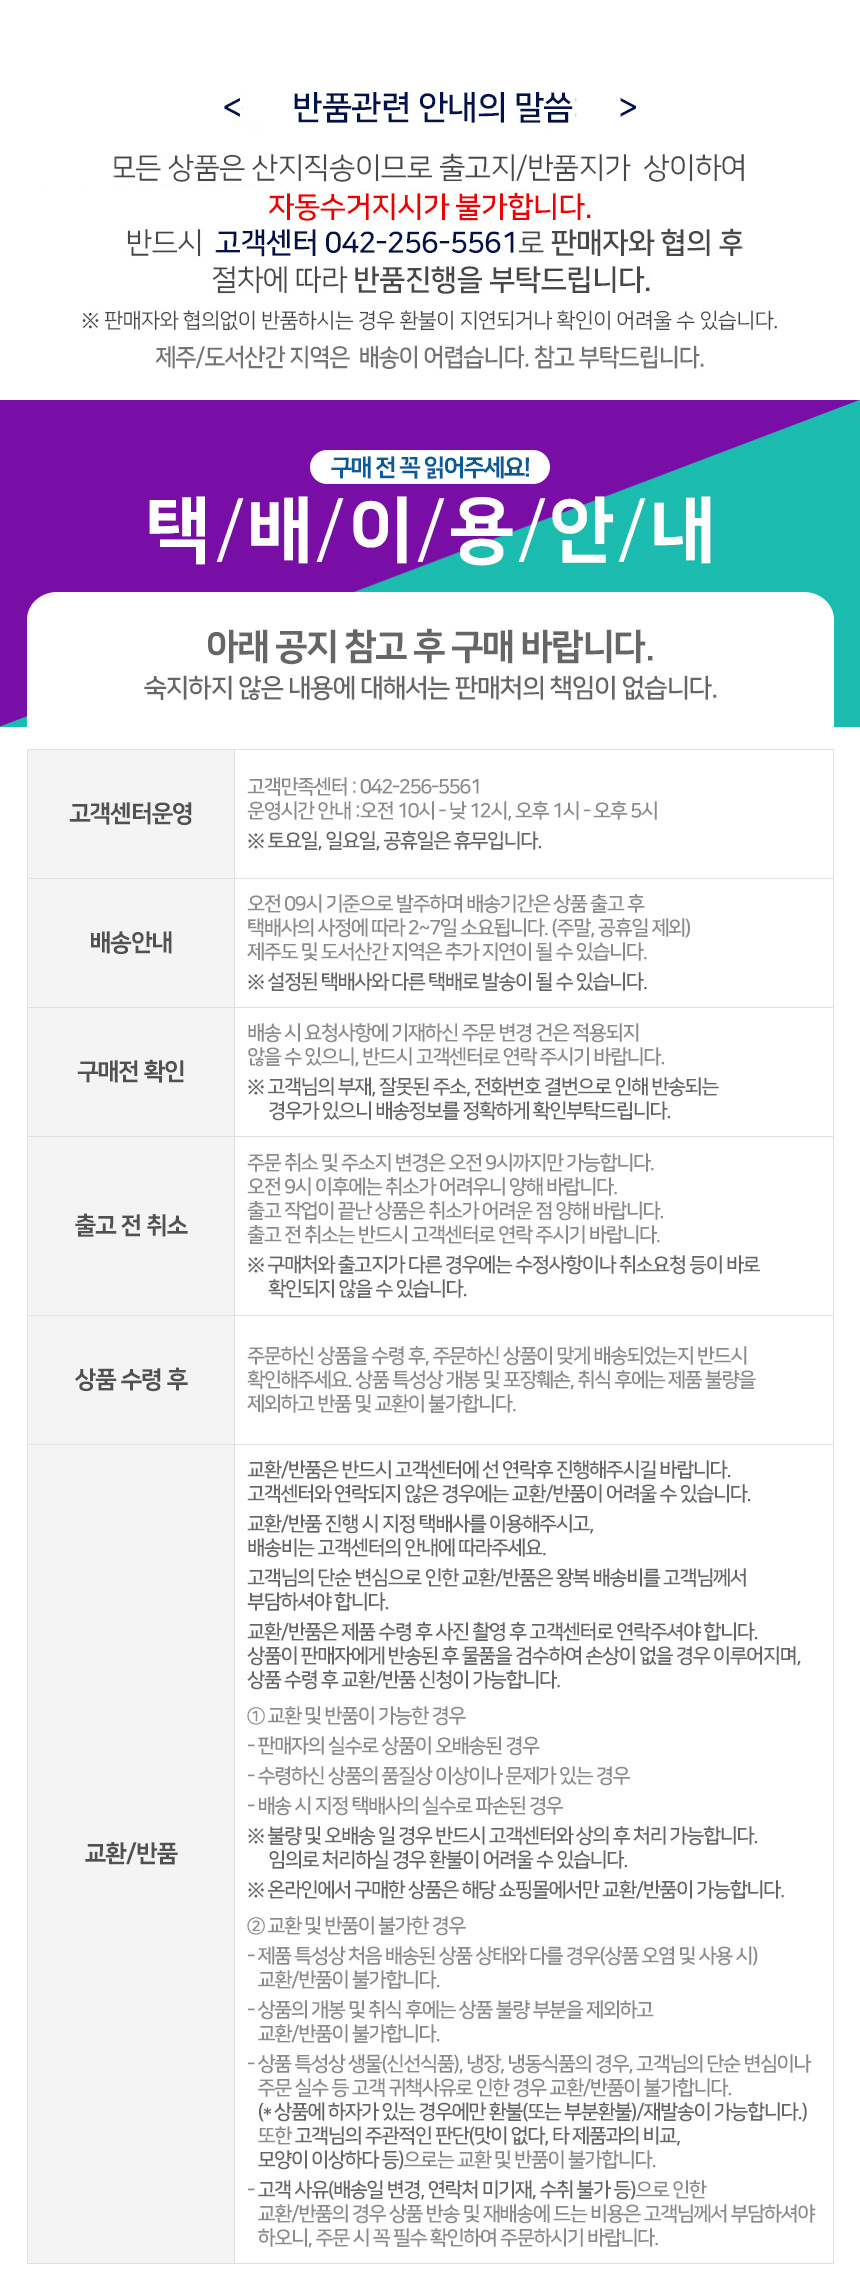 baesong_info.jpg